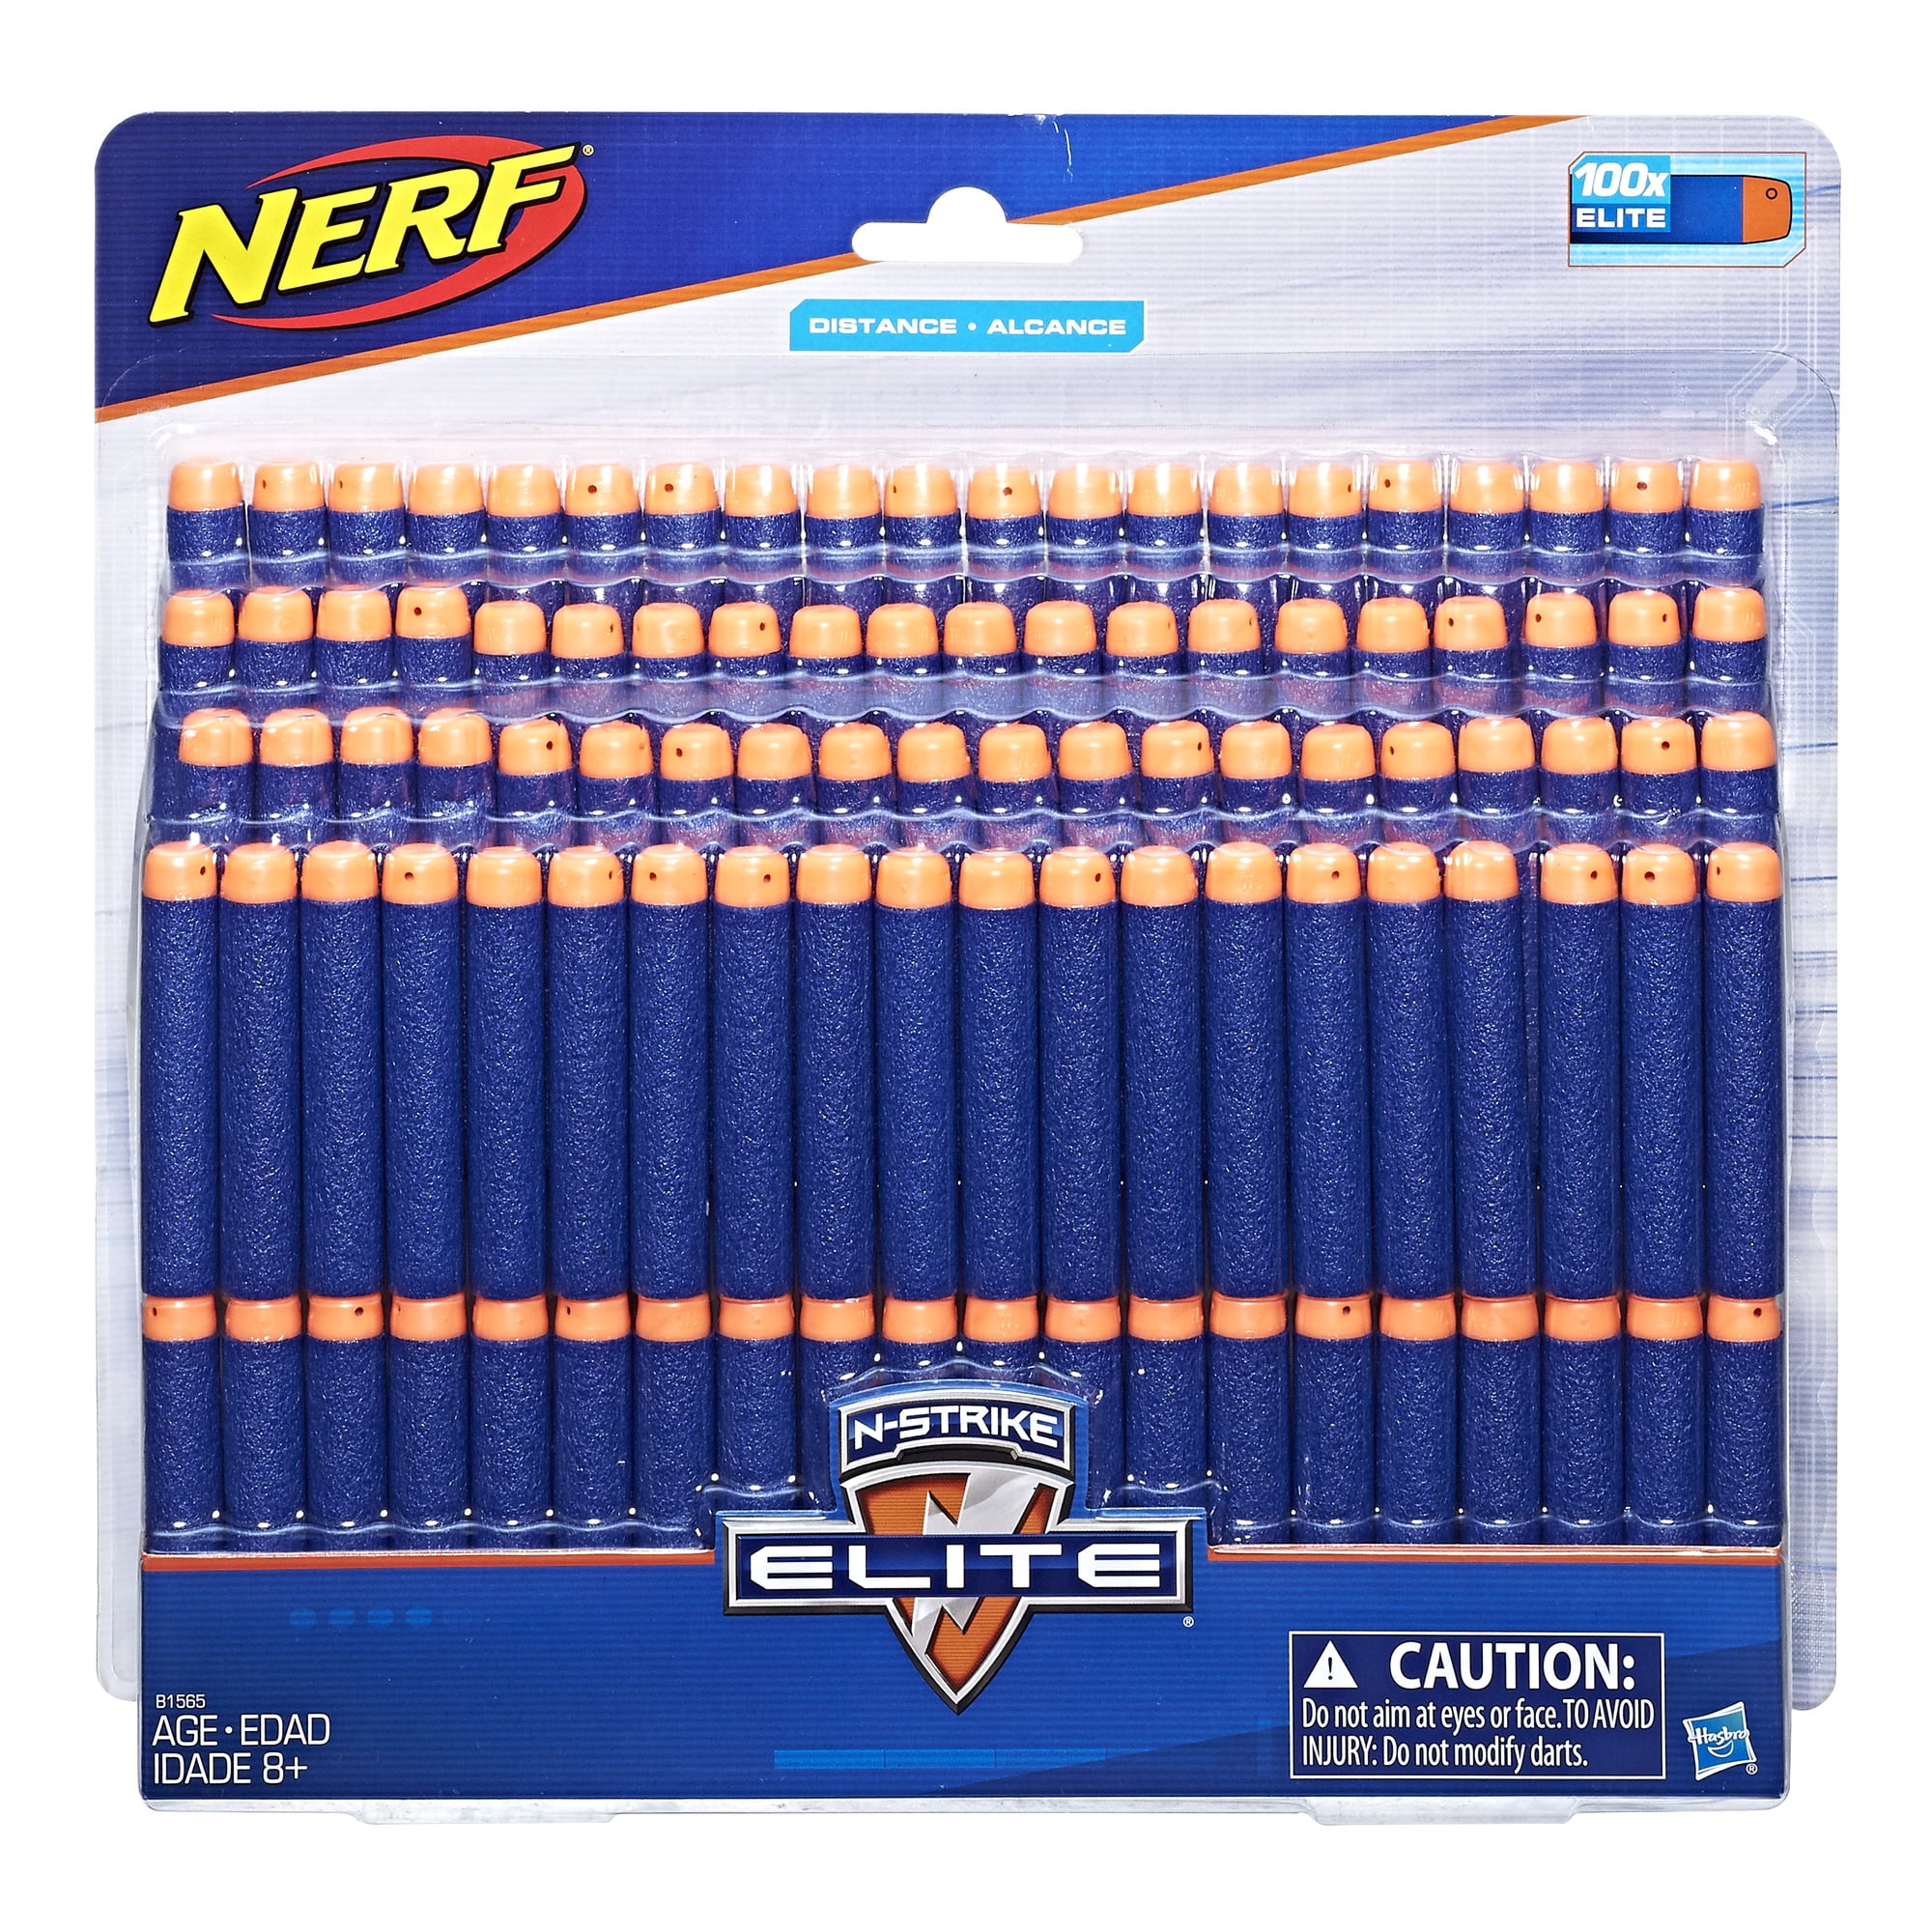 100 Refill Bullet Darts For Nerf N-Strike Blaster Blue & Orange 2.8” US Seller 